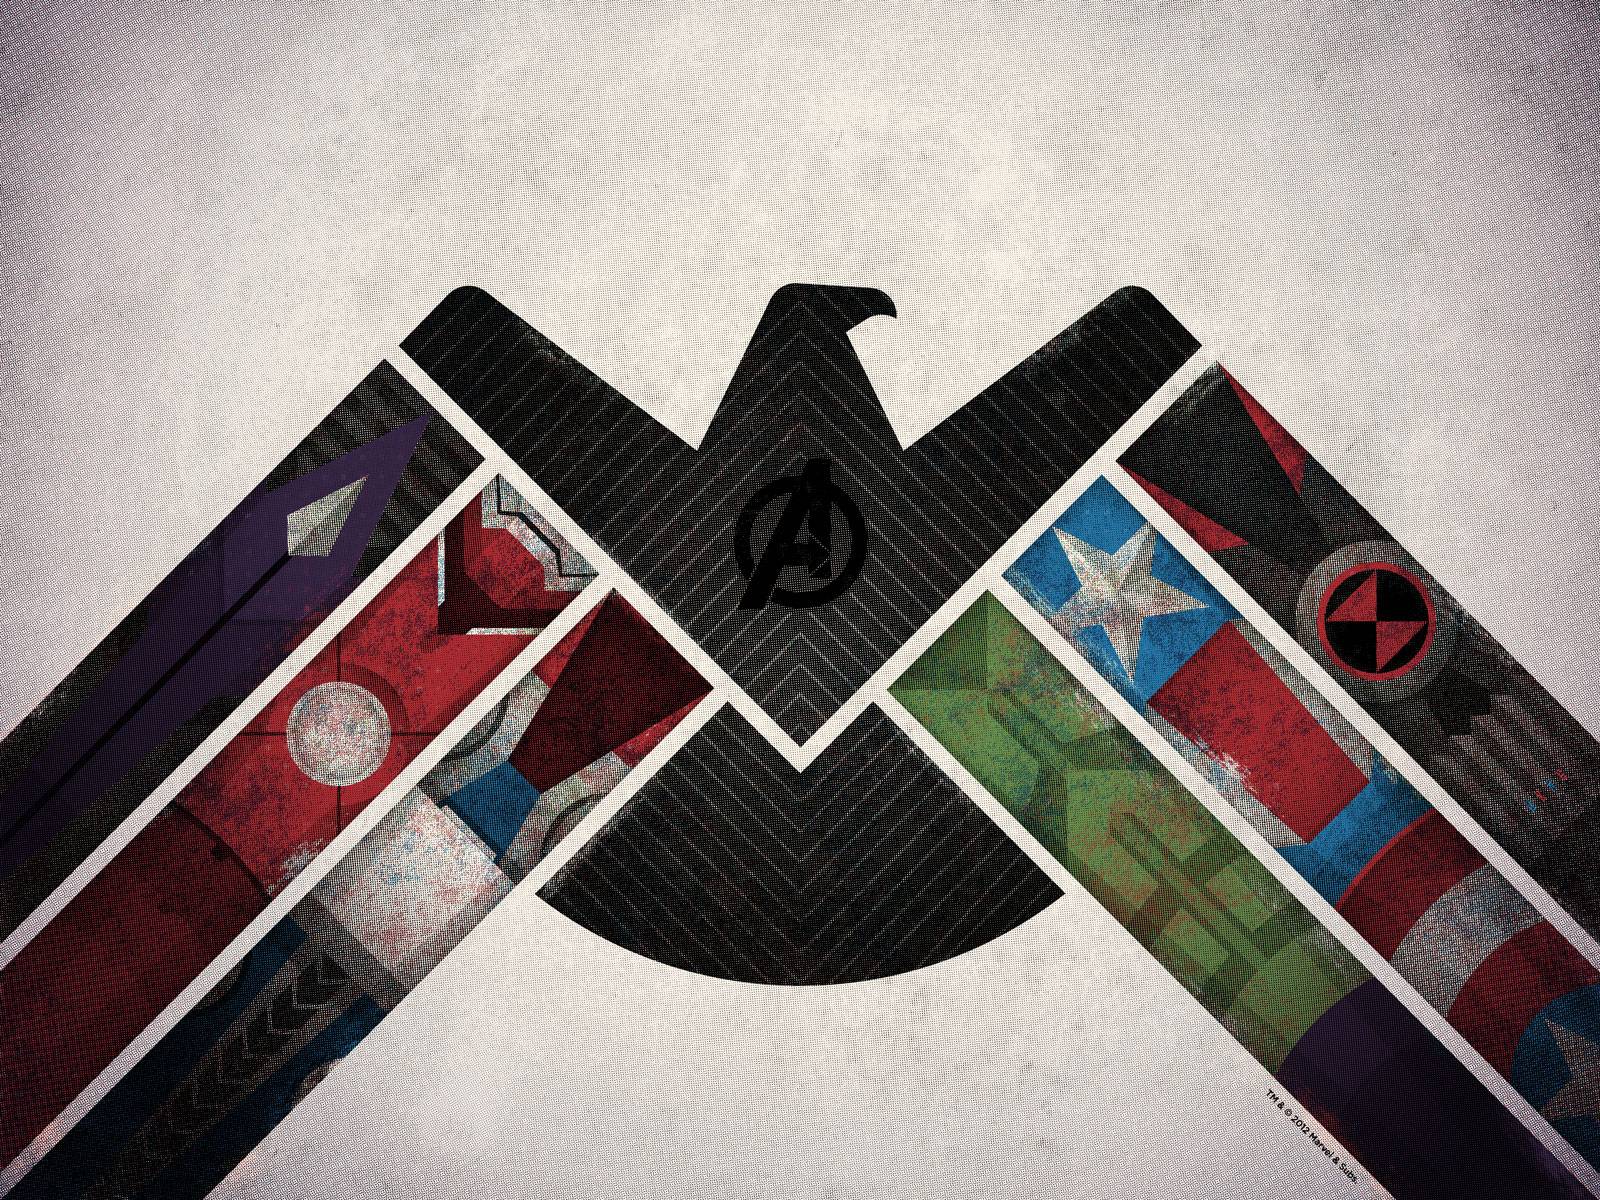 Wallpaper For > Avengers Logo Wallpaper